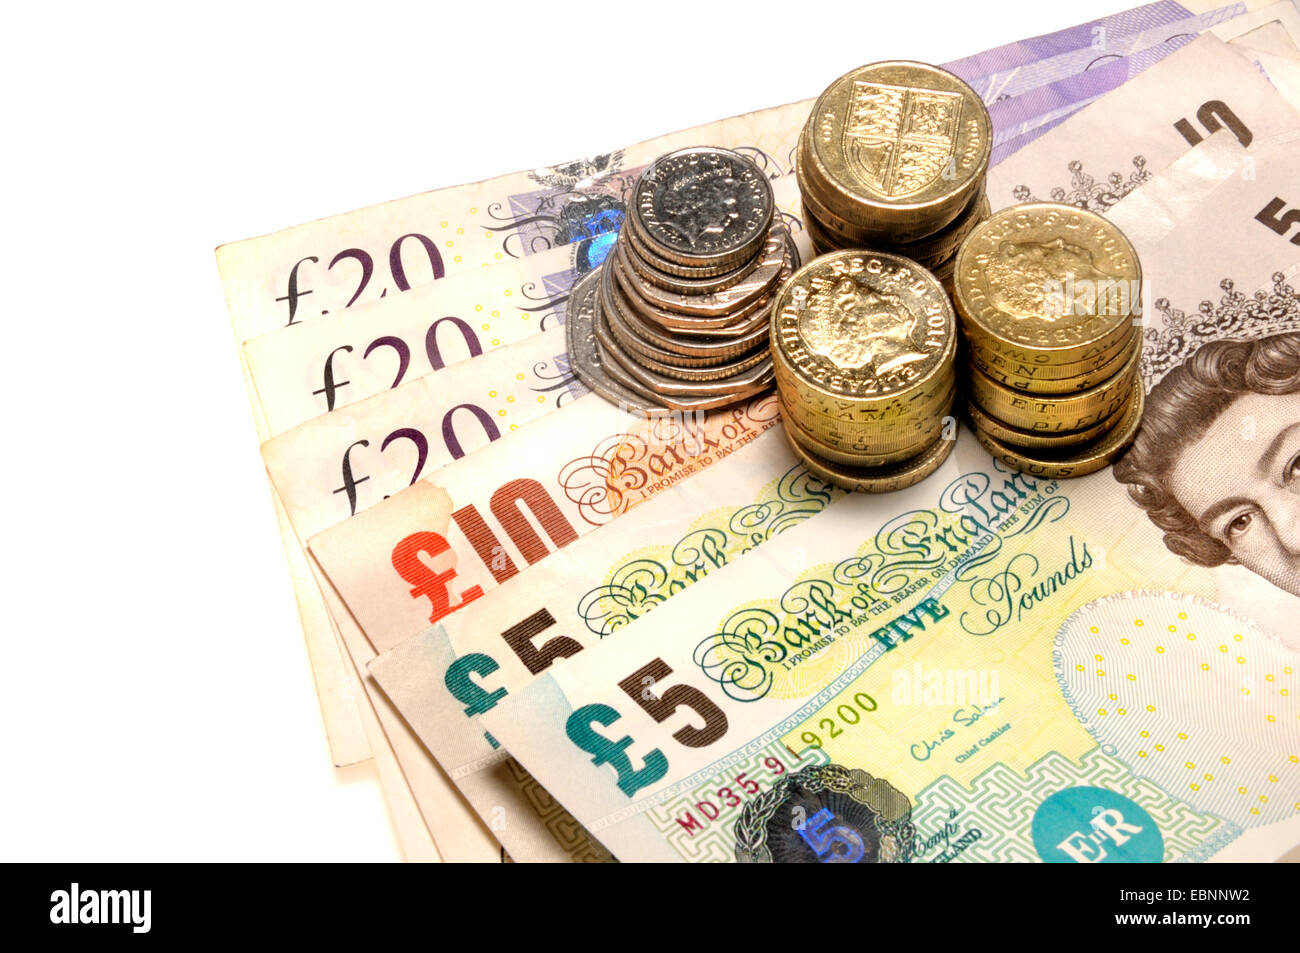 Valuta britannica - pound delle monete e delle banconote Foto Stock